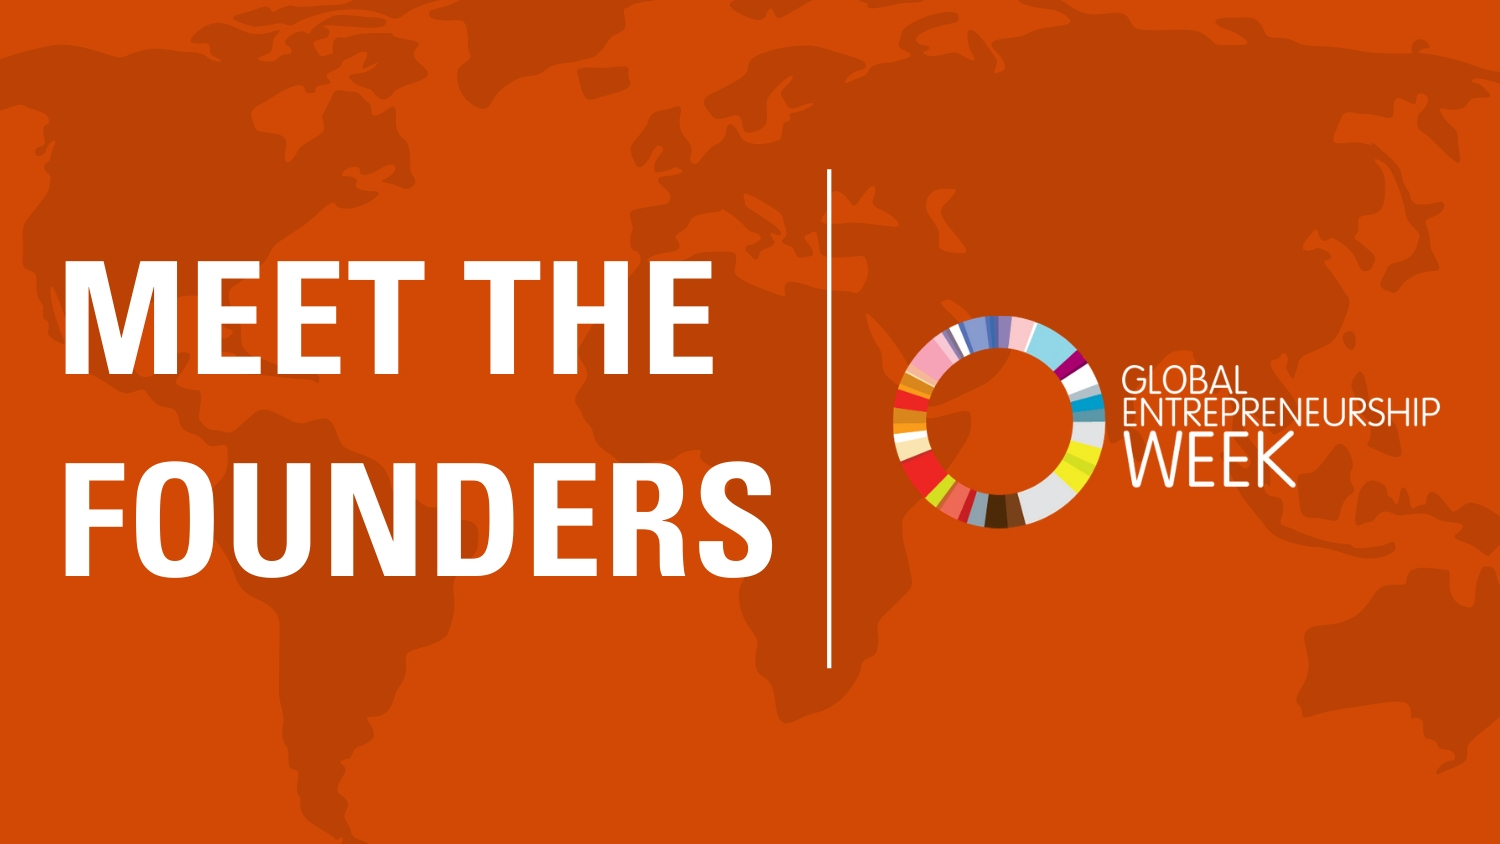 Meet the Founders - Global Entrepreneurship Week